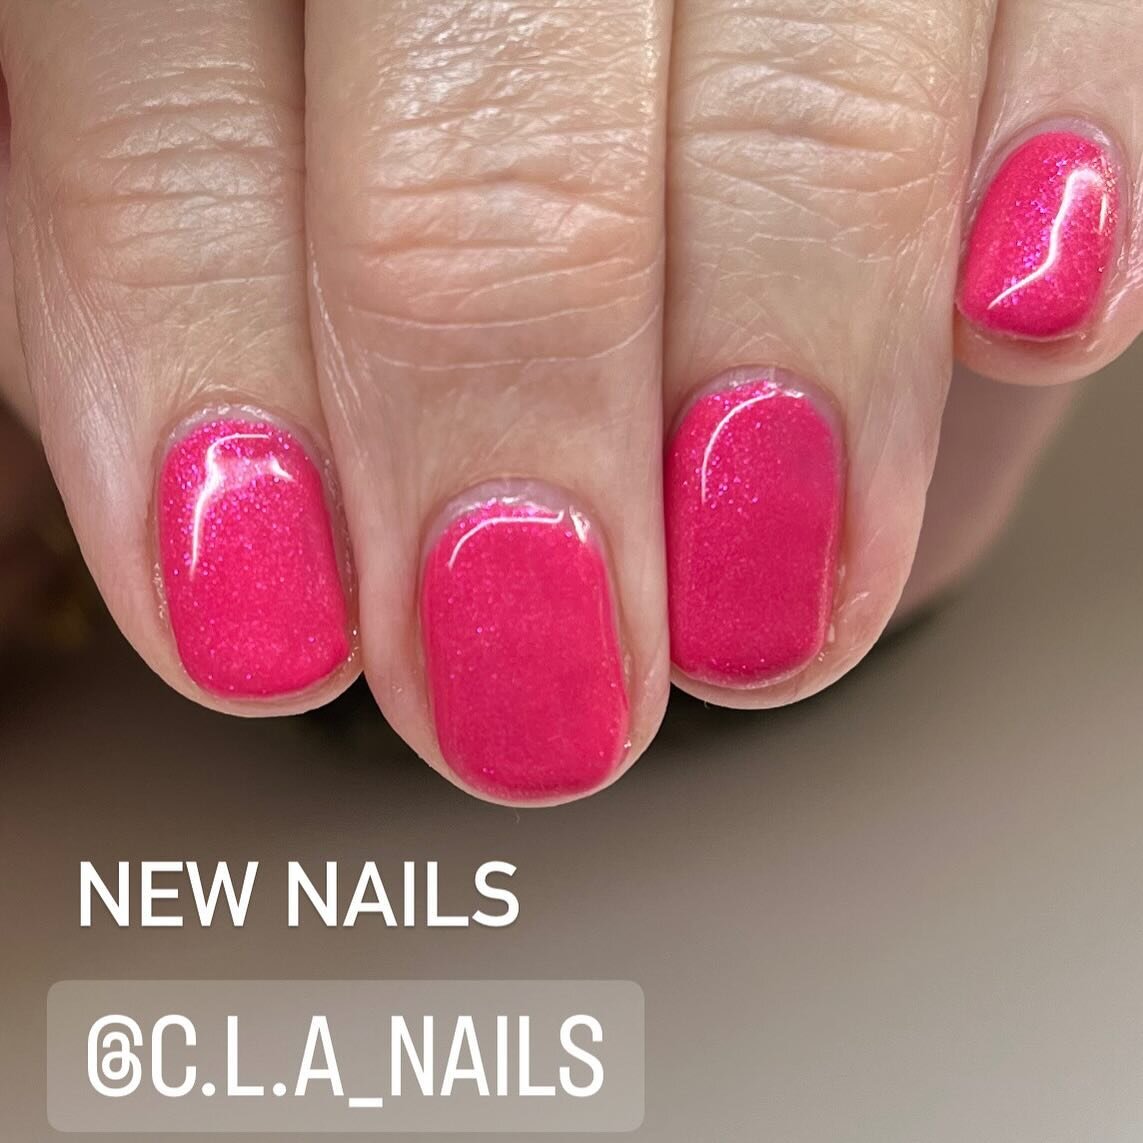 🩷🩷🩷
#pinknails #biosculpture #gels #clanails #clevedonnailsalon #healthynails